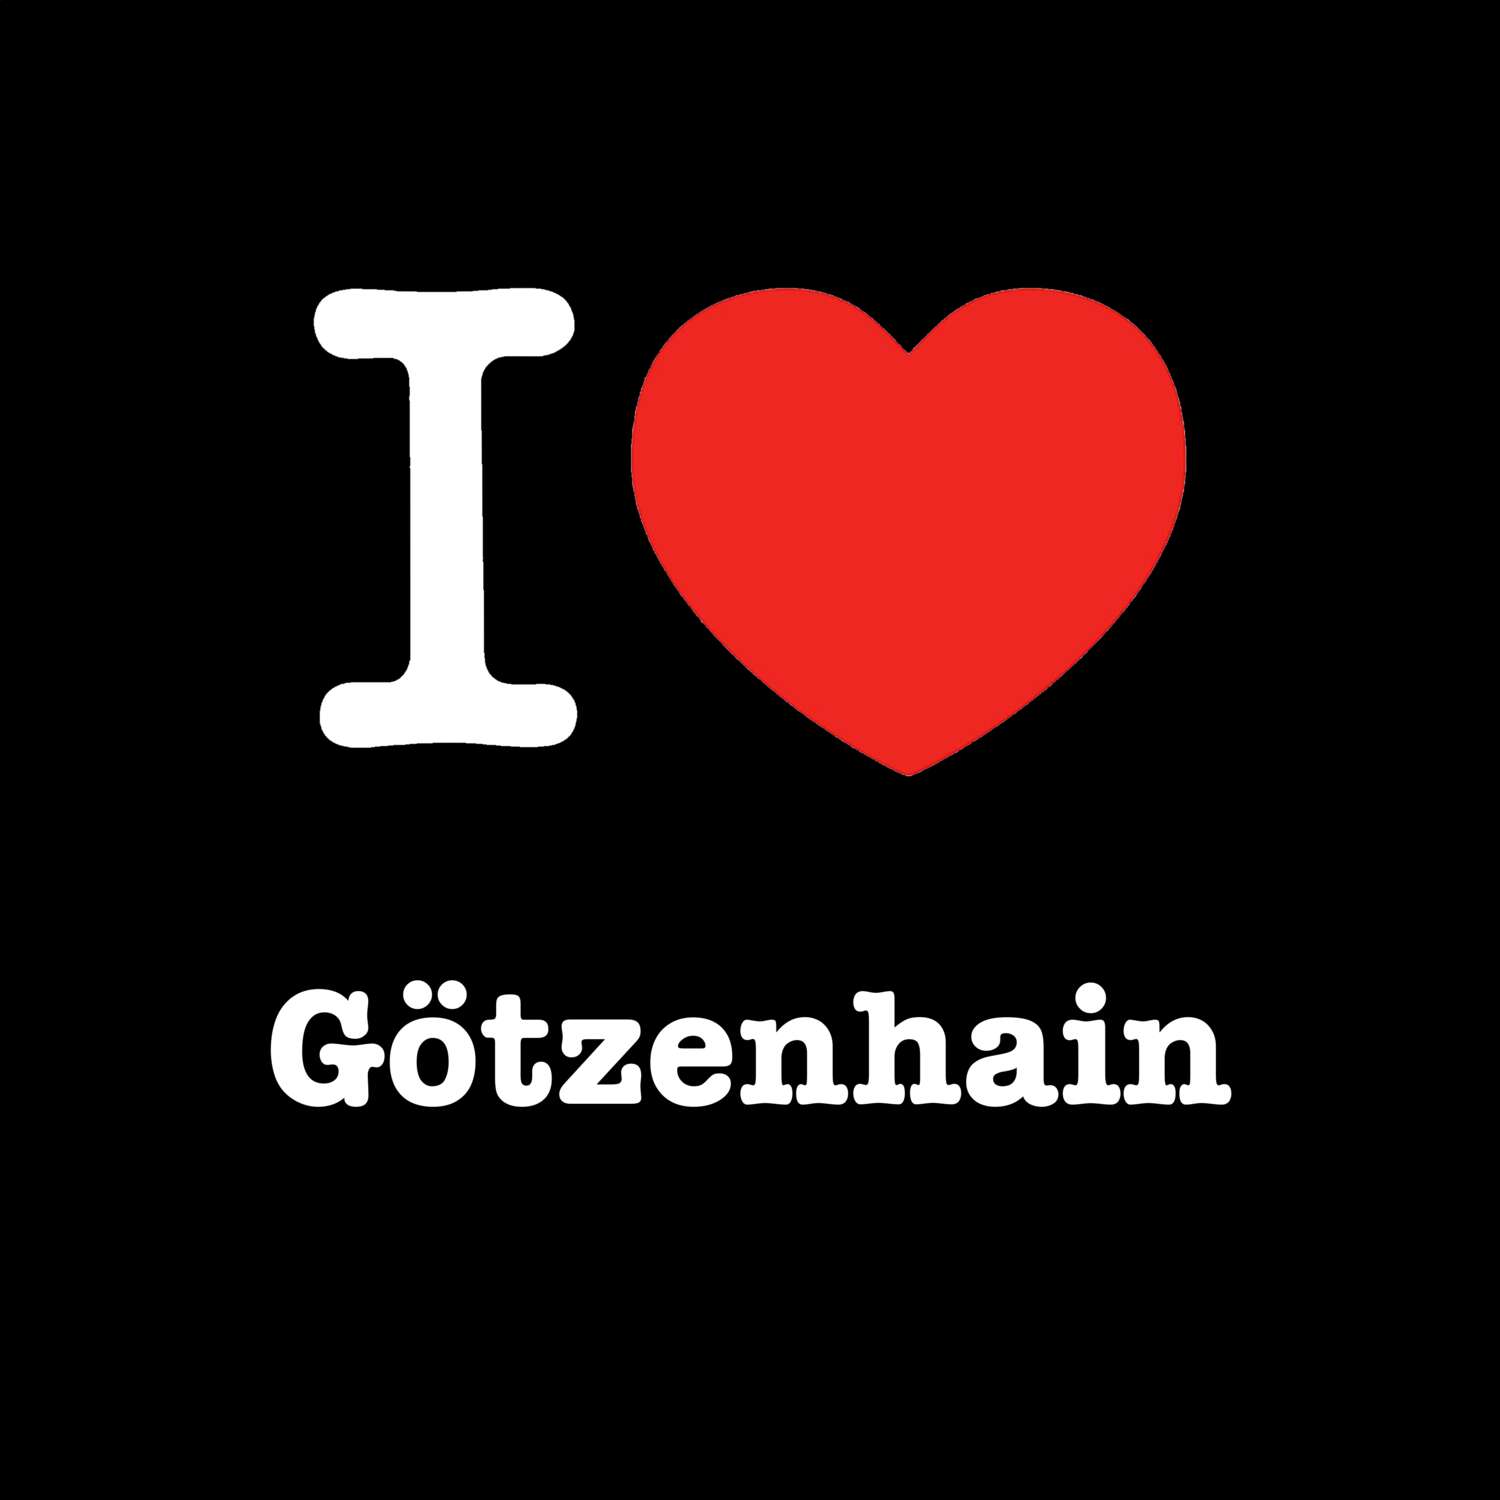 Götzenhain T-Shirt »I love«